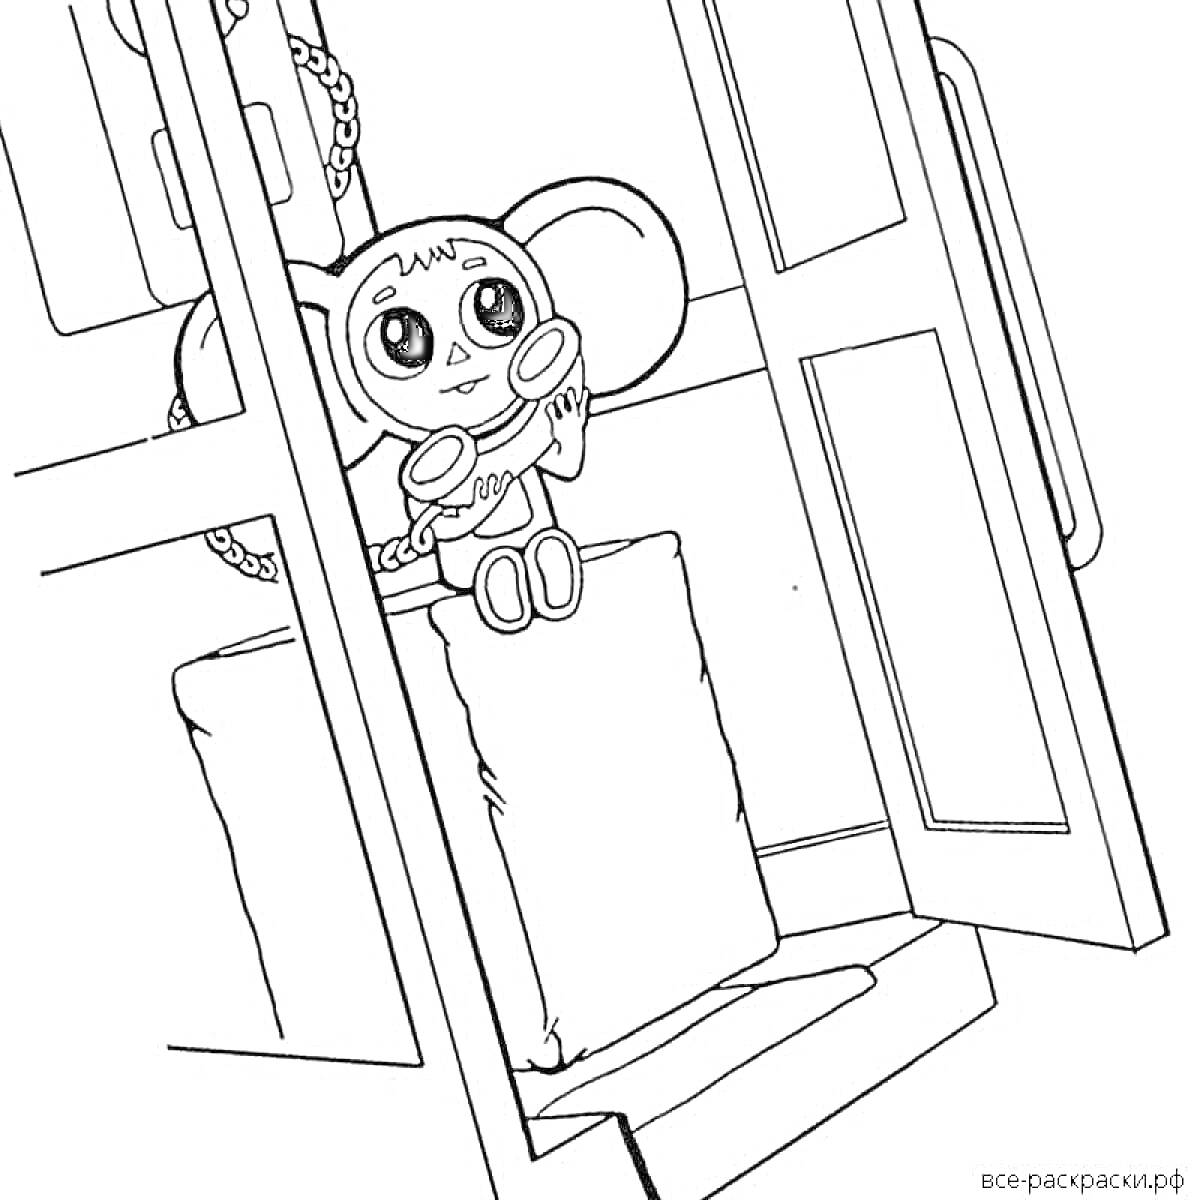 Раскраска Чебурашка сидит на посылке рядом с открытым окном